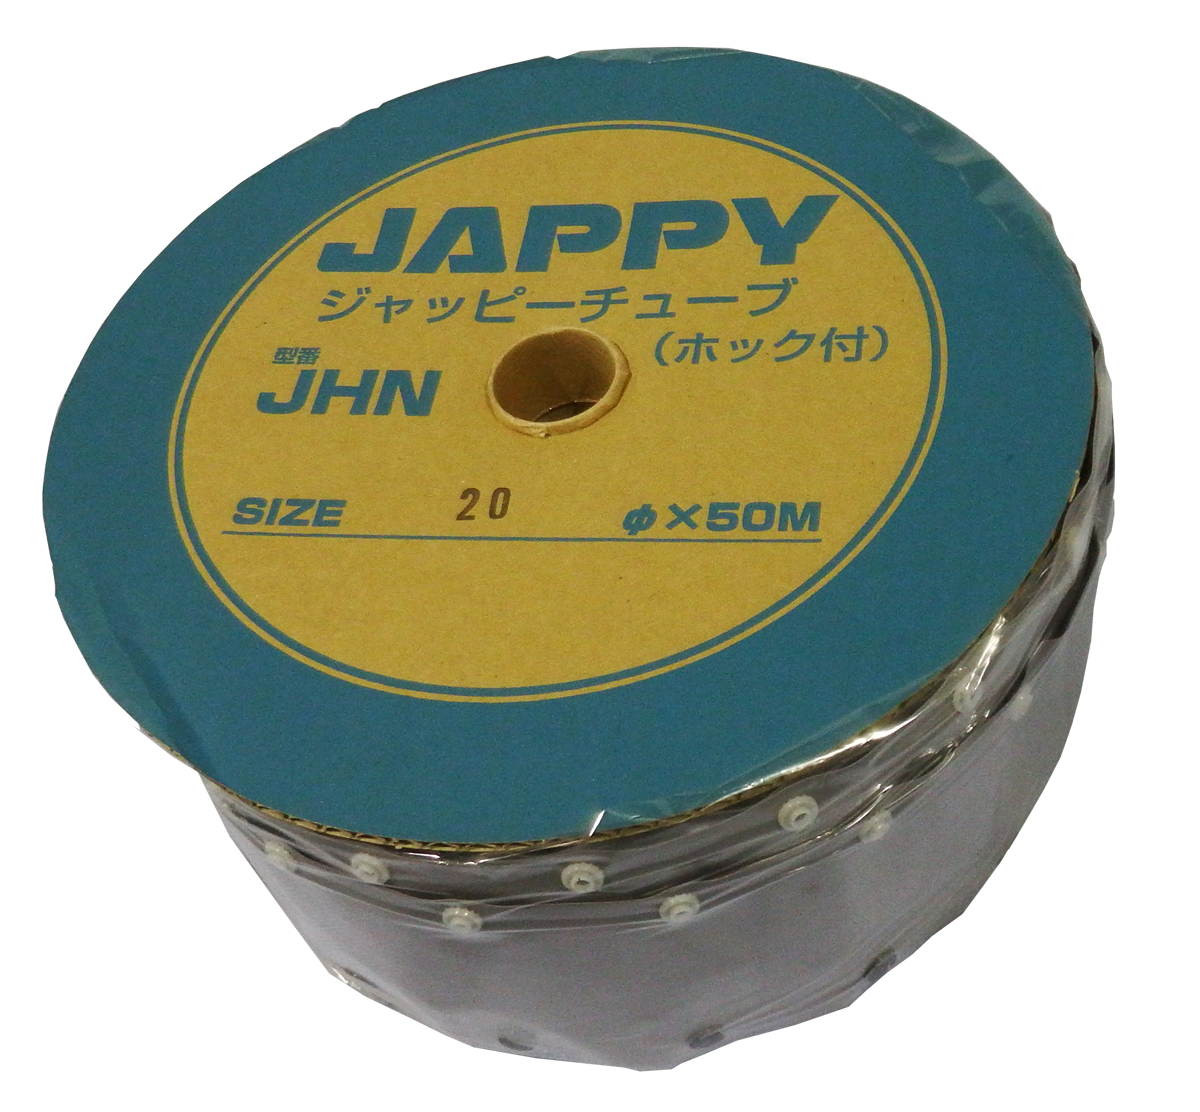 まとめて割 JAPPY ホックチューブ JHN-20 ホックチューブ ポータブルオーディオ